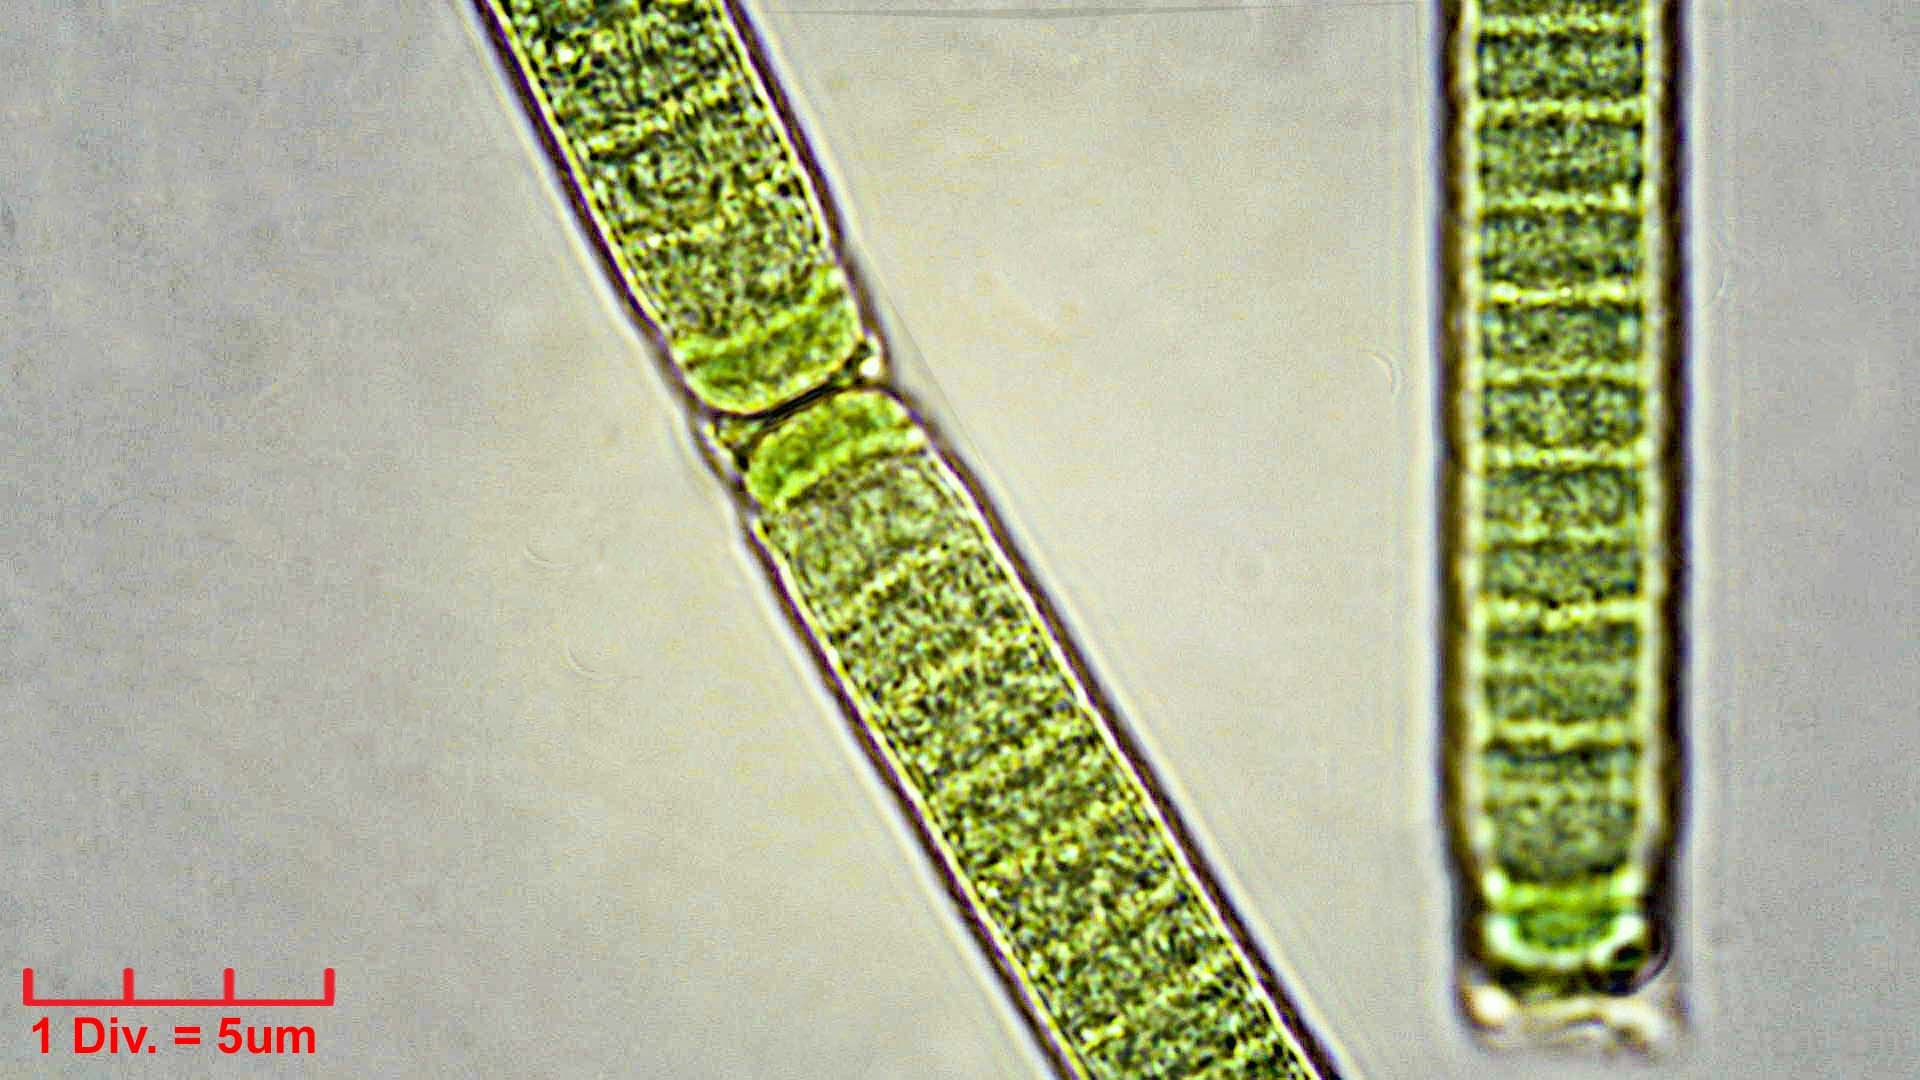 Cyanobacteria/Oscillatoriales/Oscillatoriaceae/Phormidium/irriguum/phormidium-irriguum-230.jpg